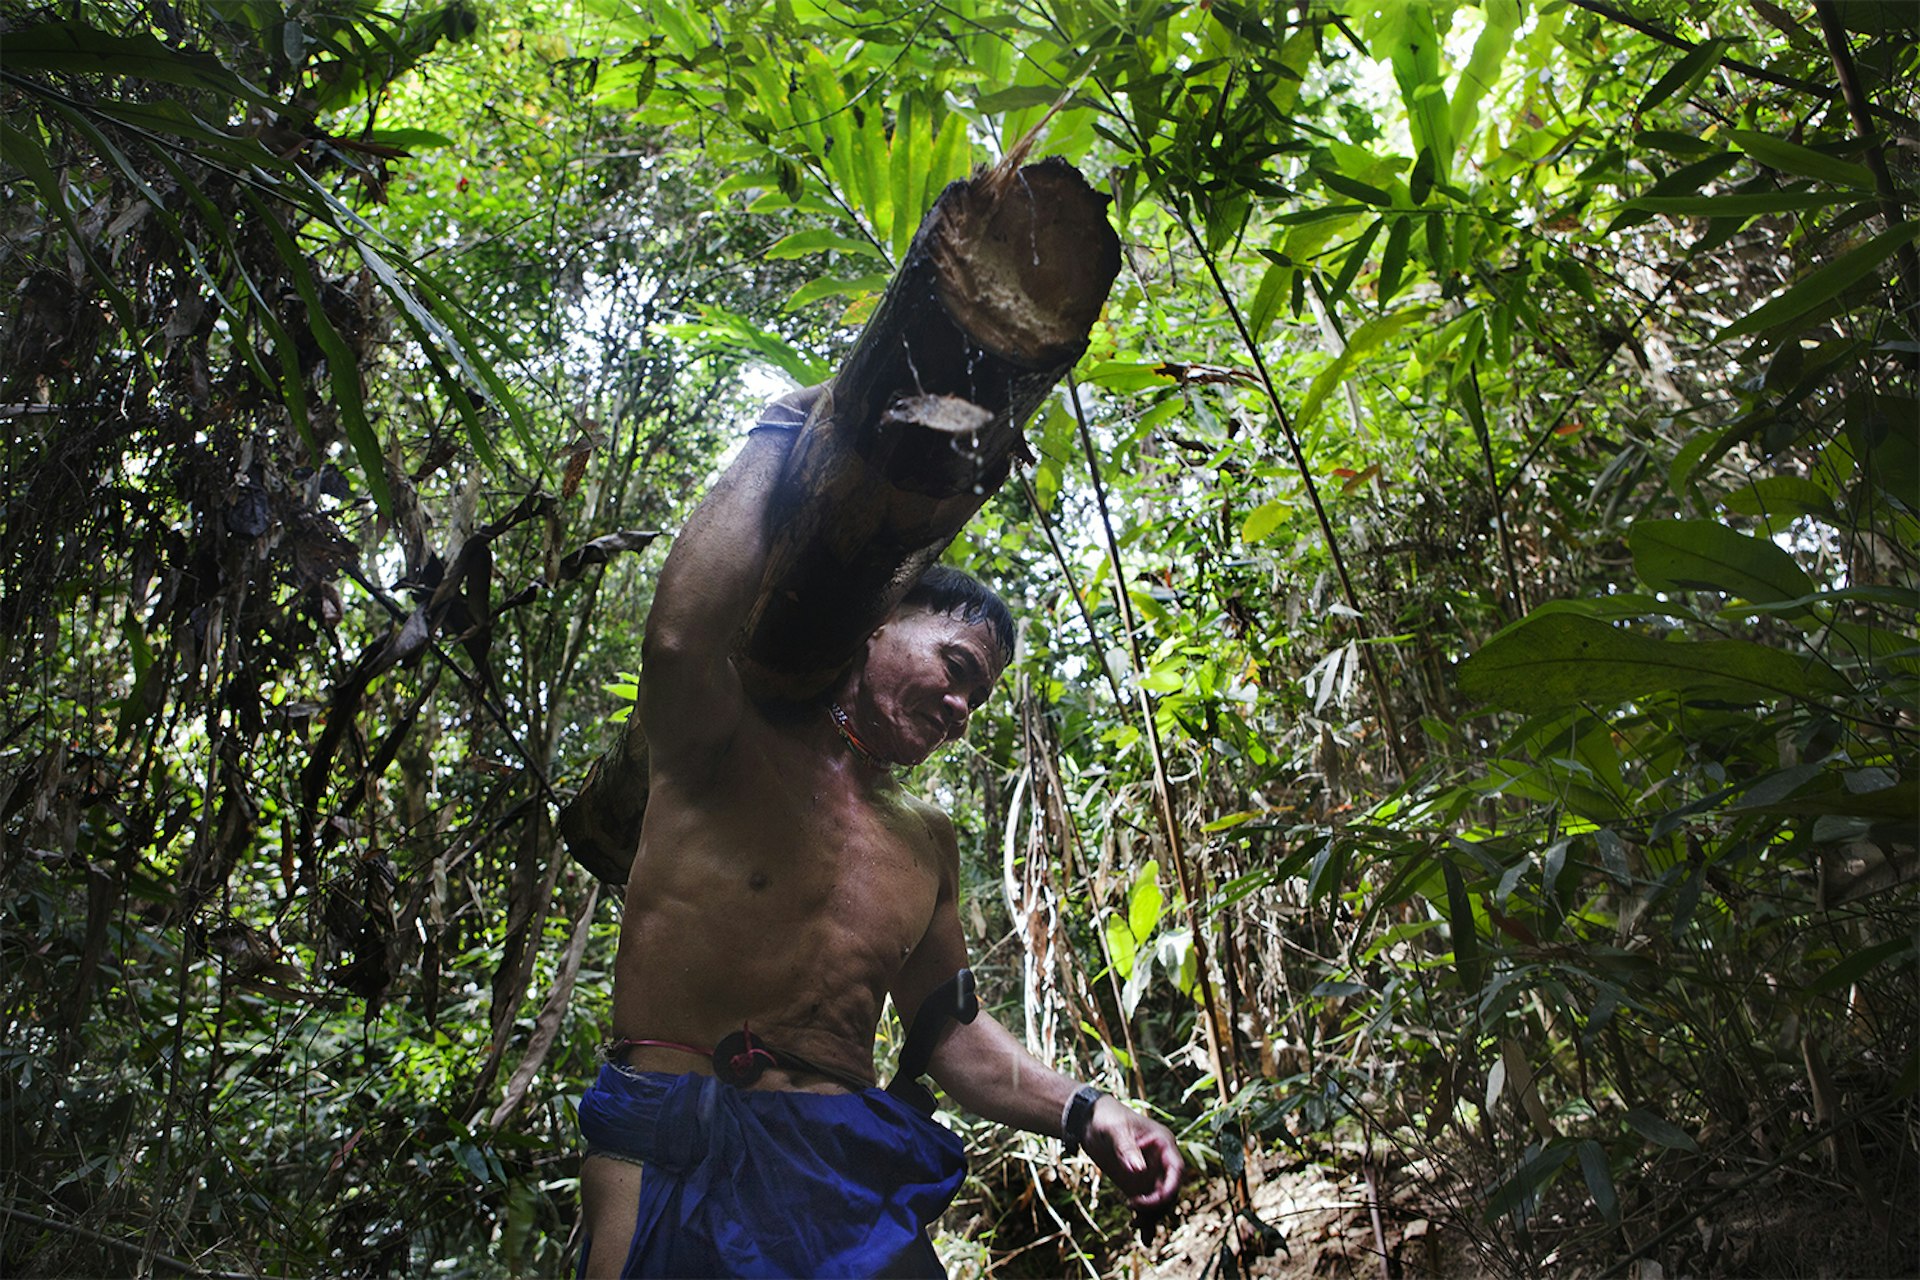 A member of Borneo's nomadic Penan Dayak tribe